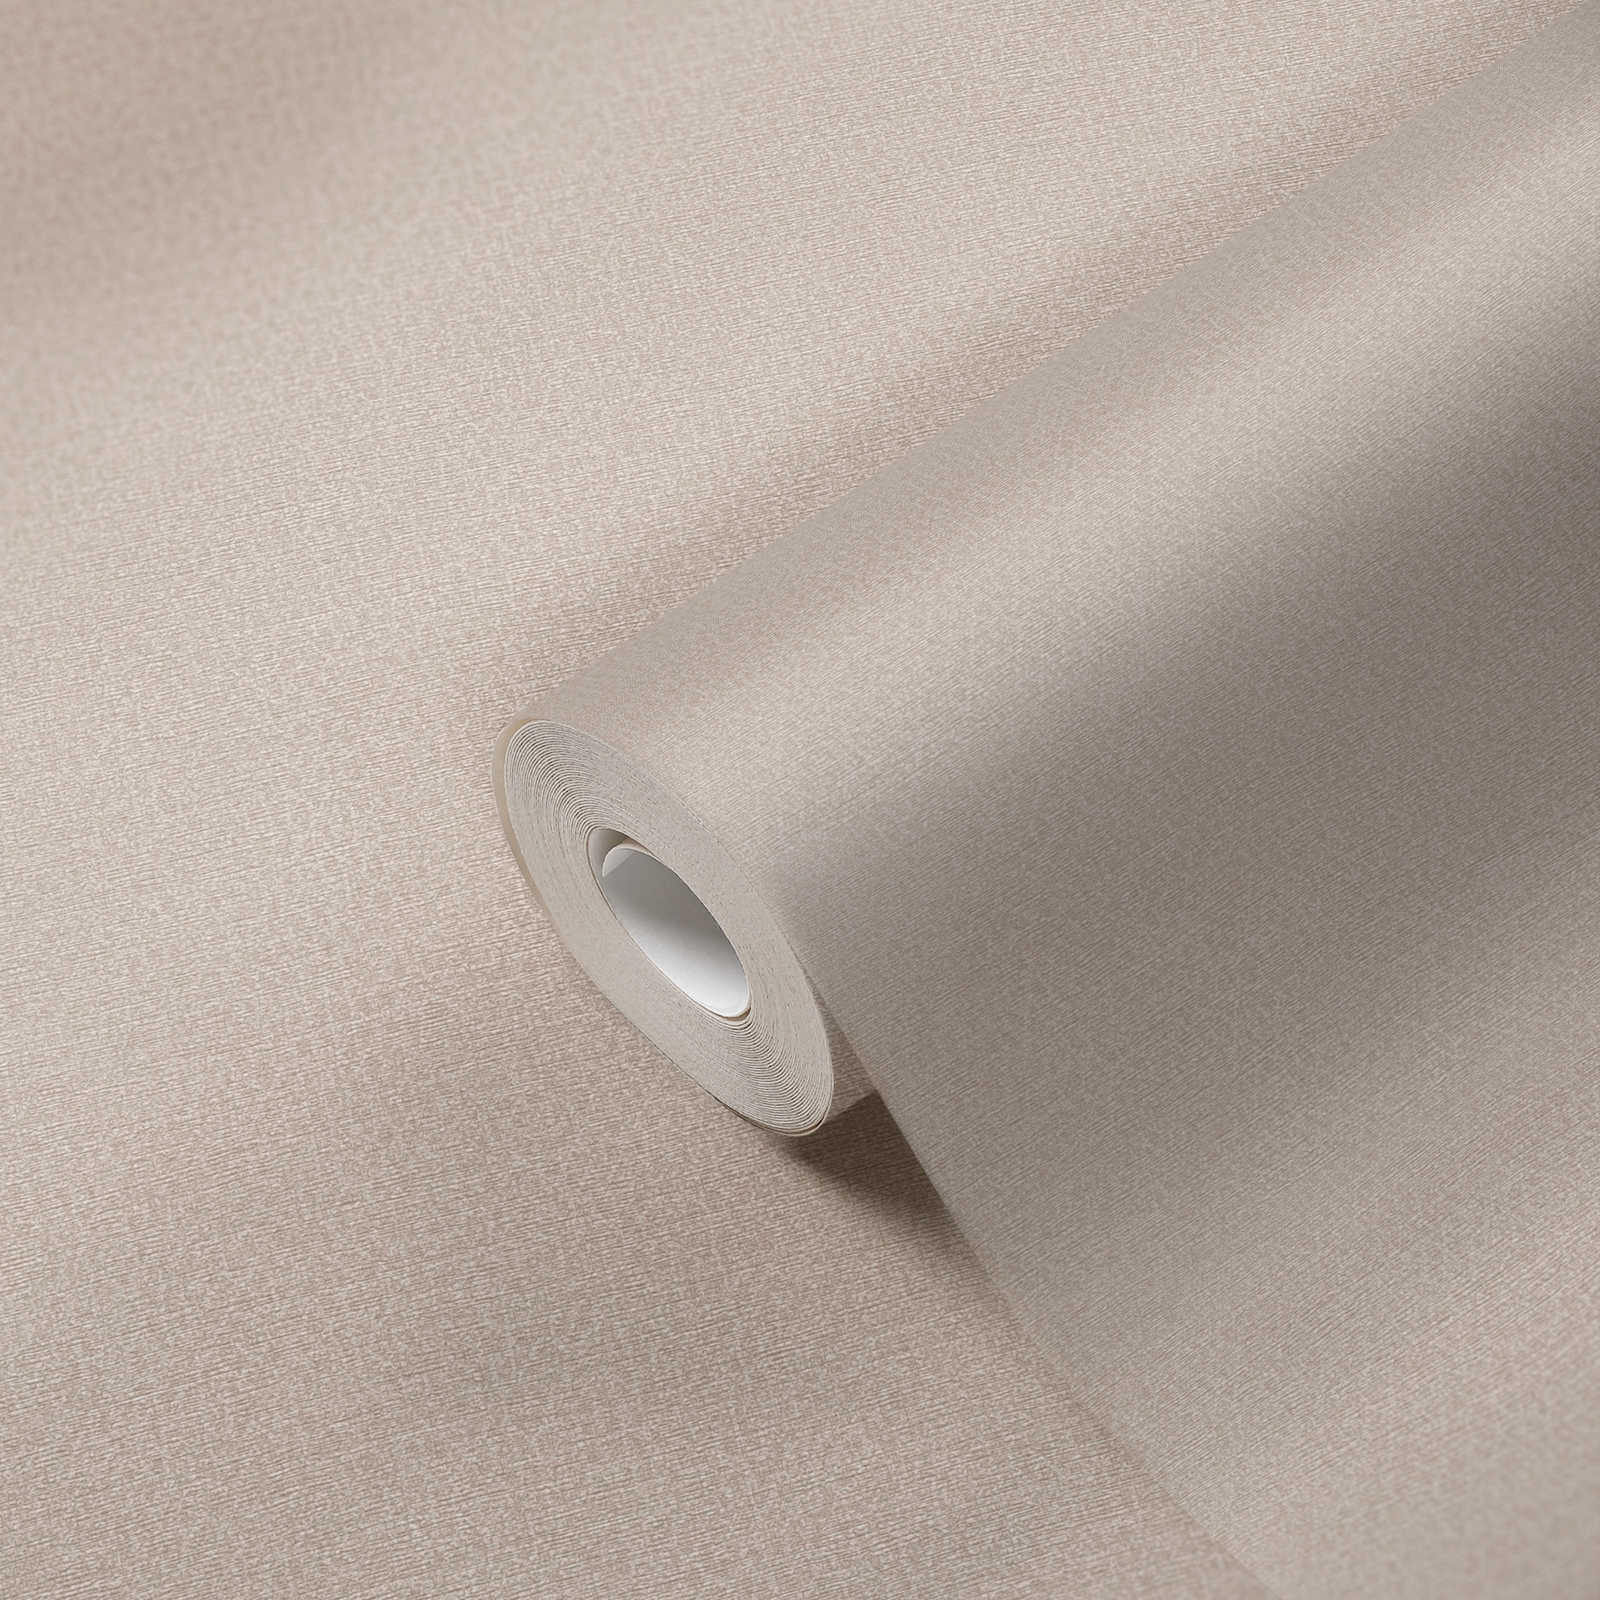             Carta da parati in tessuto non tessuto con motivo a pois ed effetto lucido senza PVC - Beige, Grigio
        